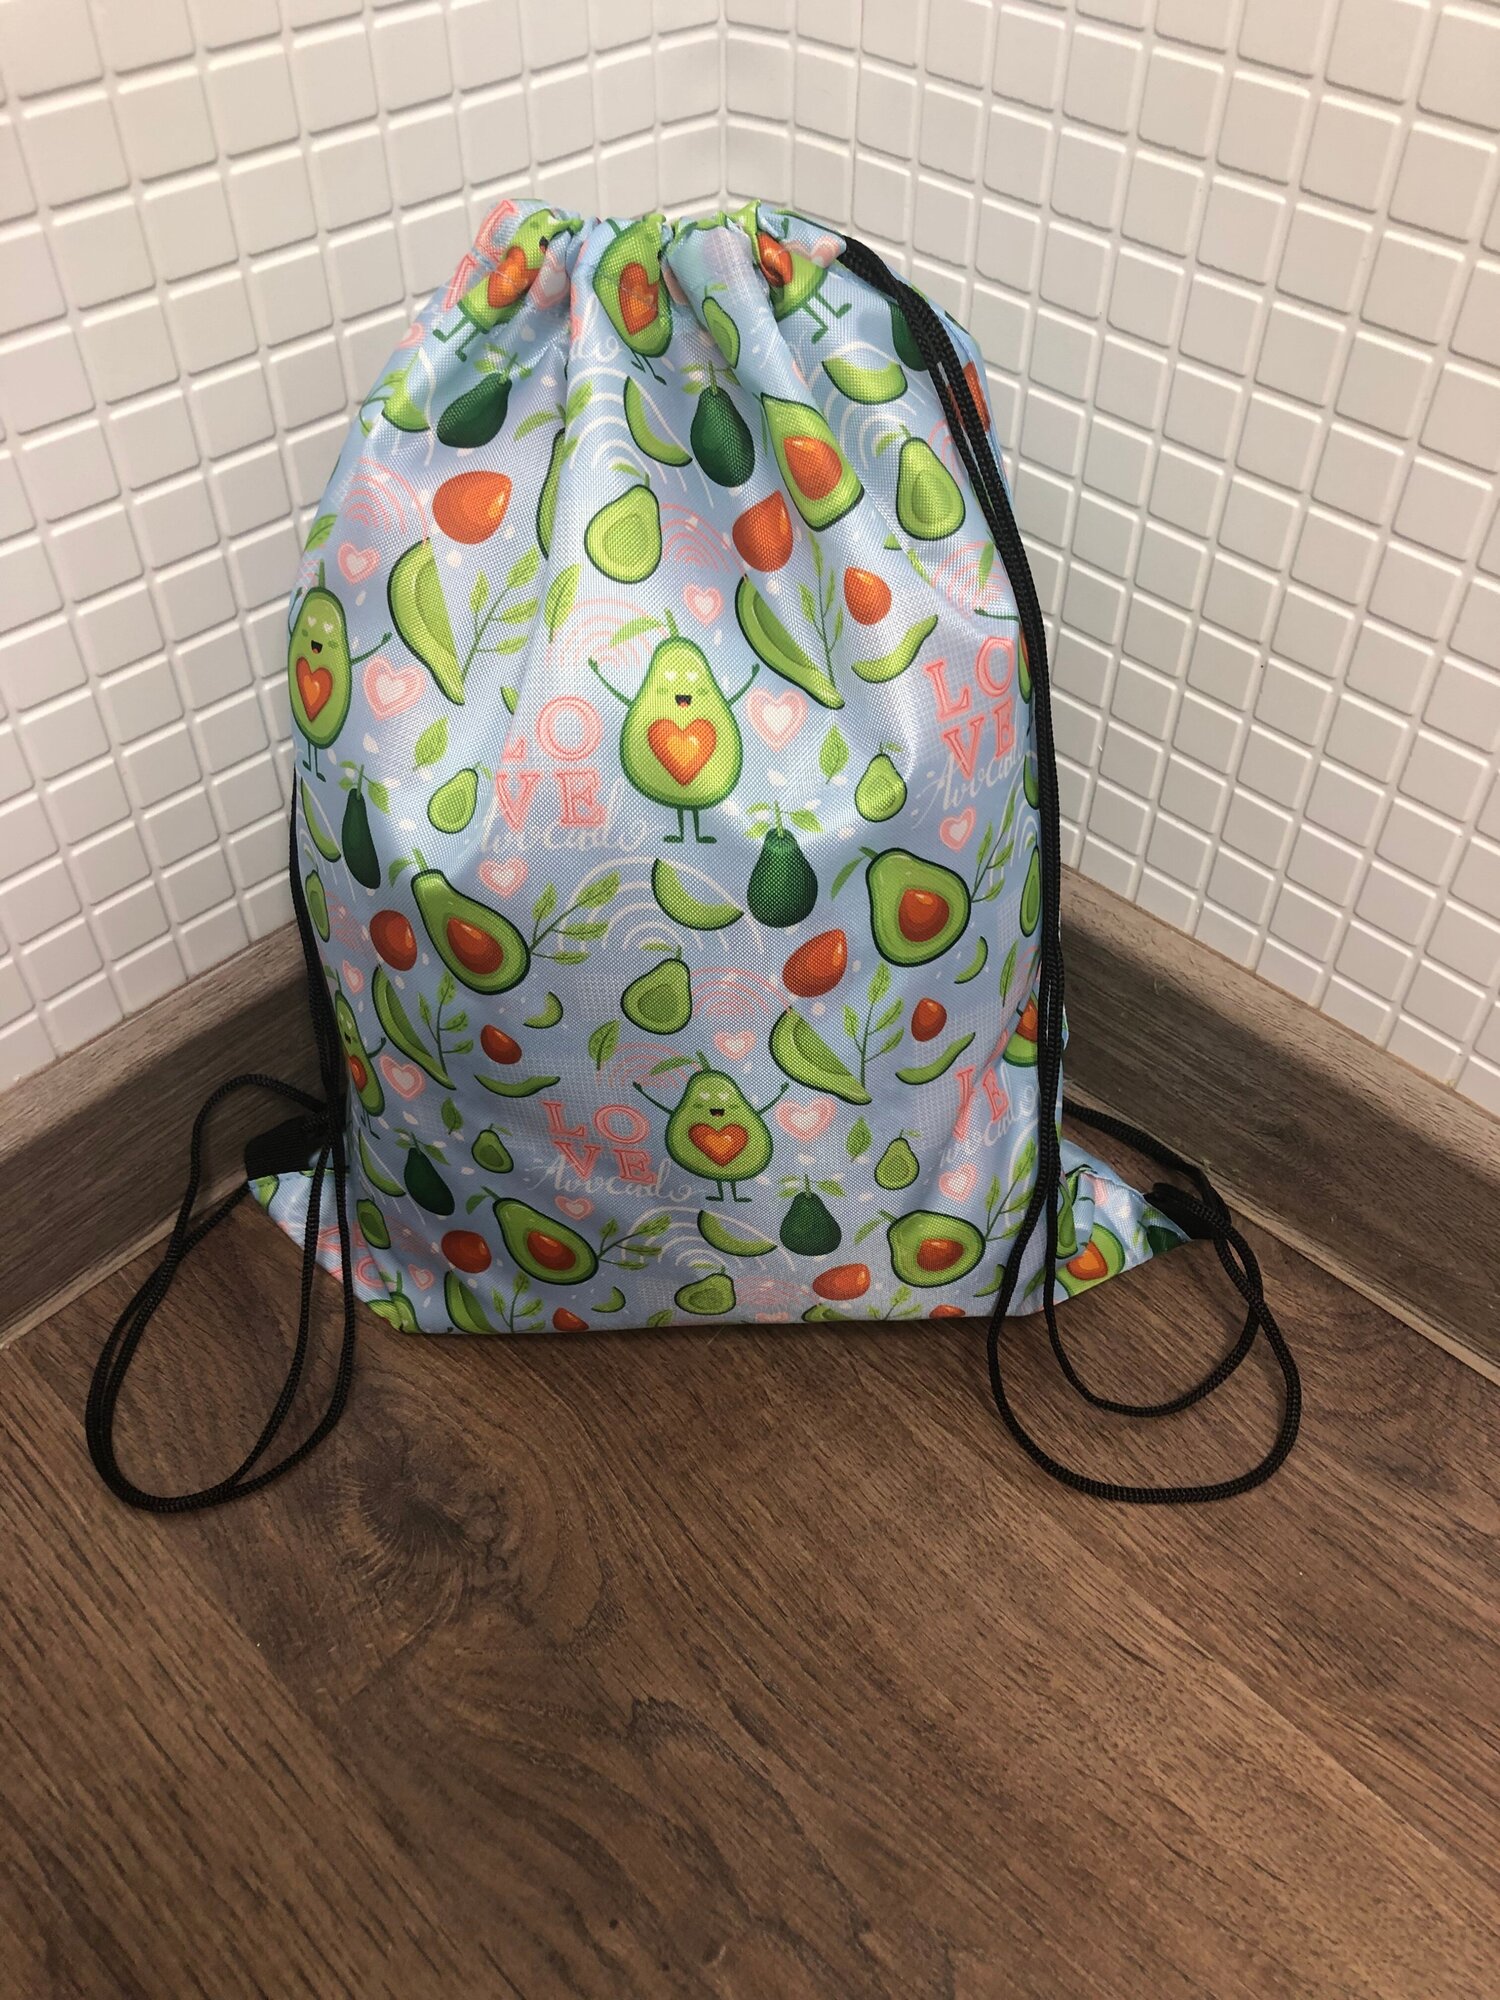 Мешок рюкзак для сменной обуви и формы (Avocado), цвет голубой + брелок В подарок